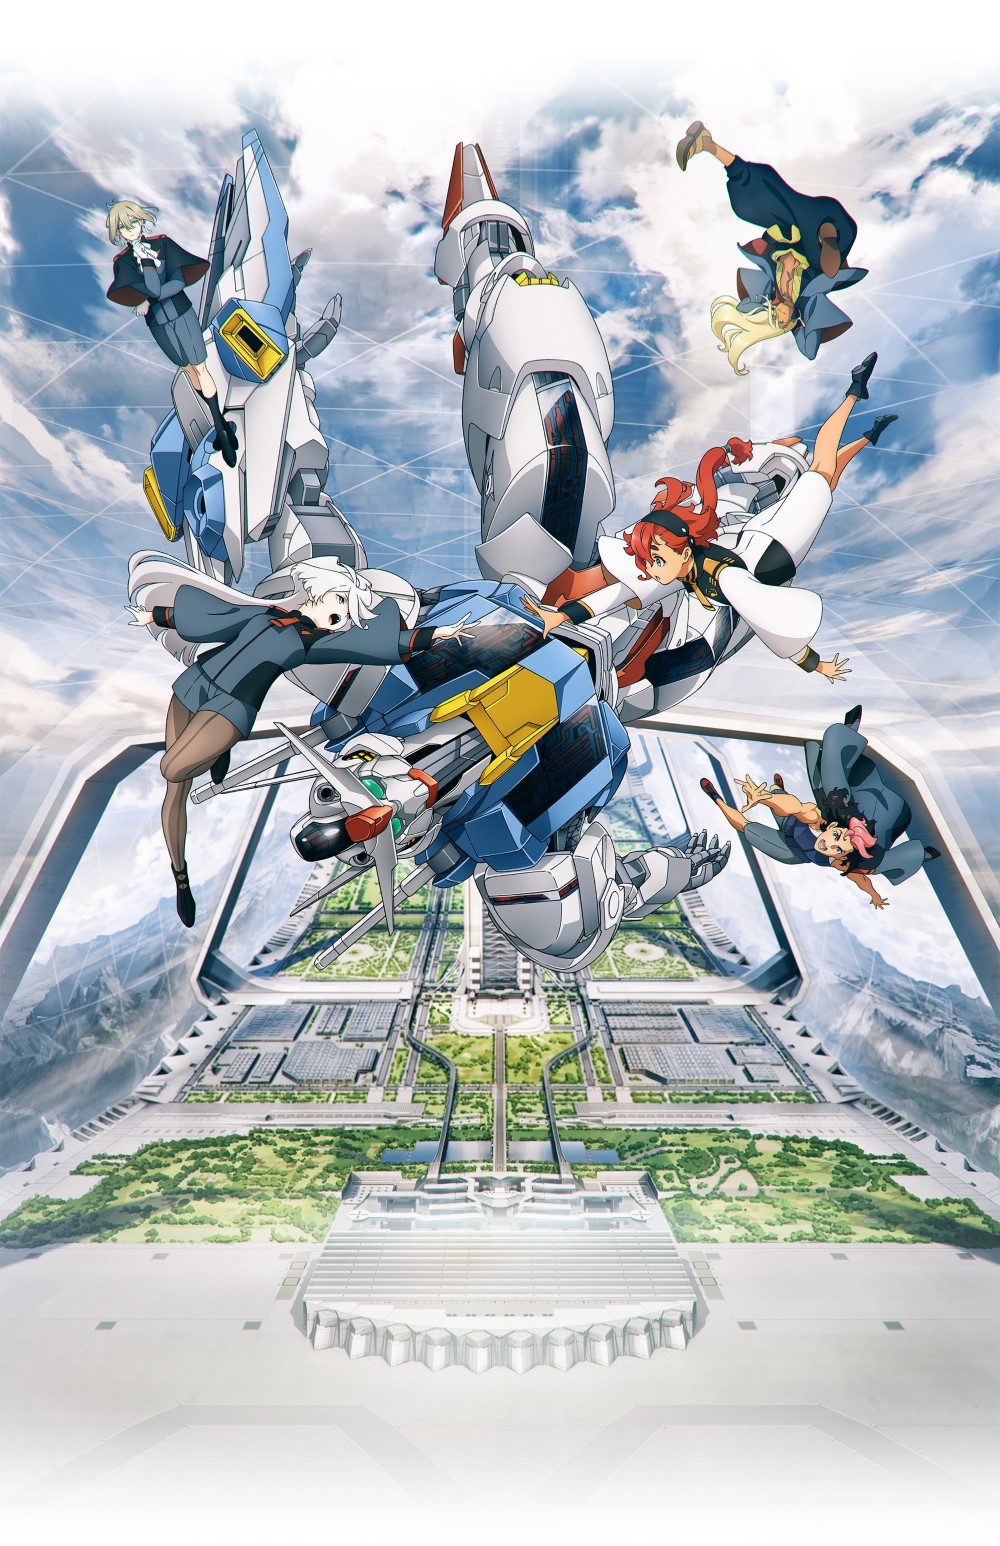 【喵萌奶茶屋】[機動戰士鋼彈 水星的魔女 序幕/Mobile Suit Gundam THE WITCH FROM MERCURY PROLOGUE][先行版][1080p][繁體][v2][招募翻譯]